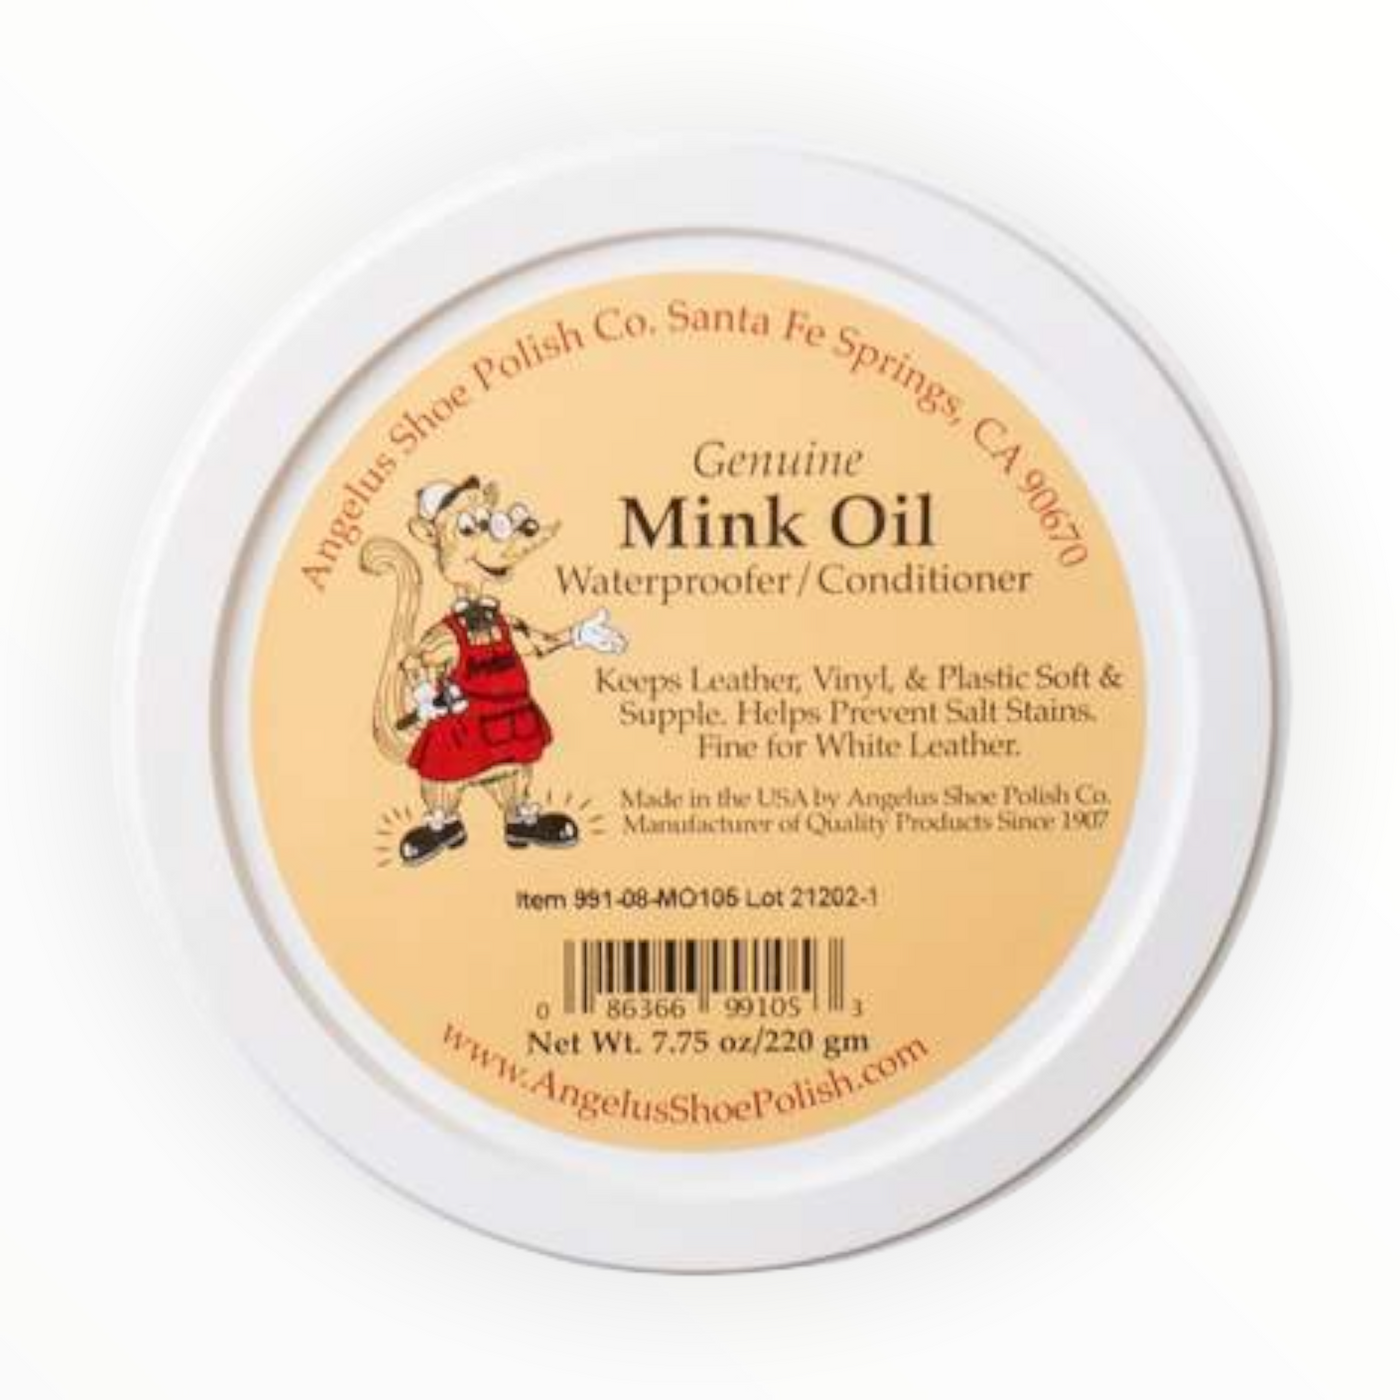 Mink Oil